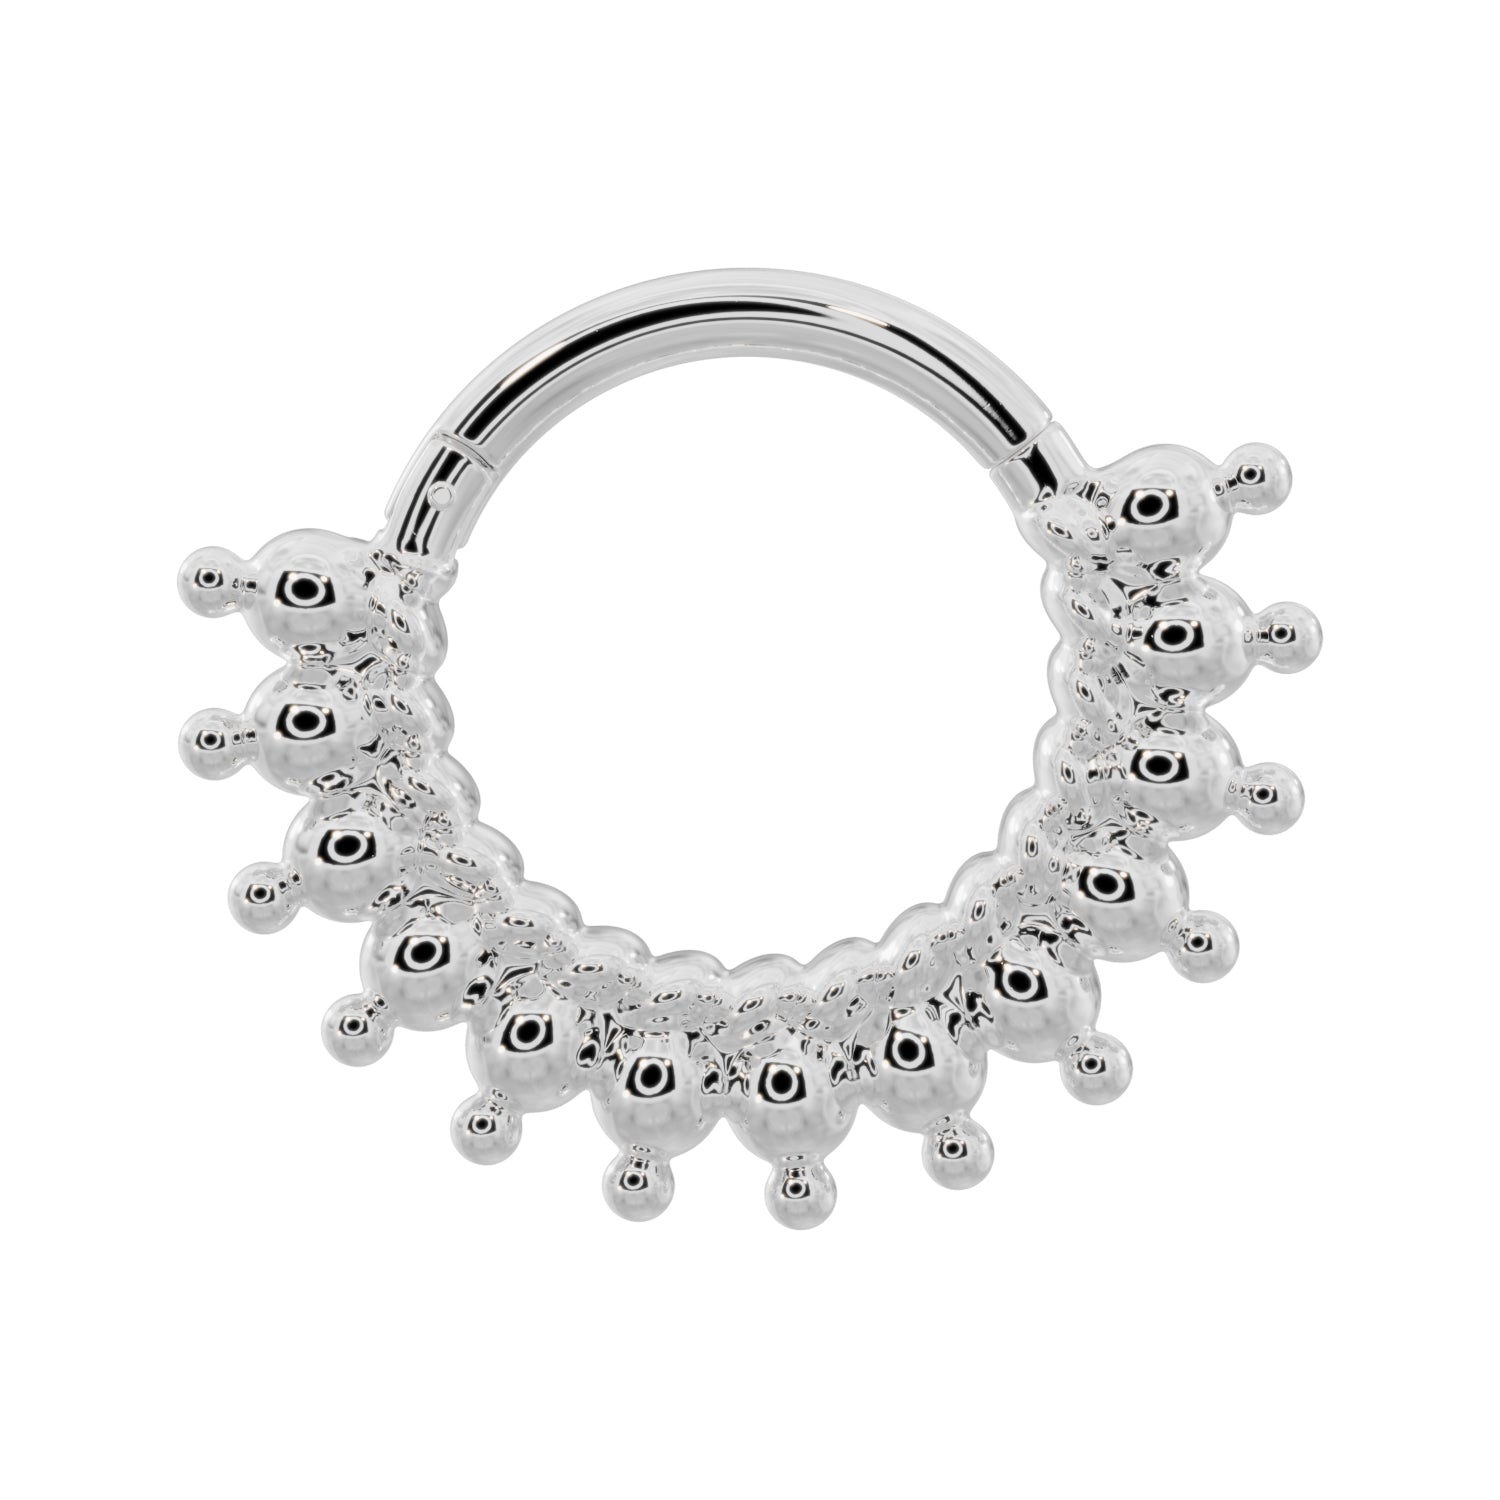 Shala Beads 14k Gold Clicker Ring Hoop-14K White Gold   16G (1.2mm)   3 8